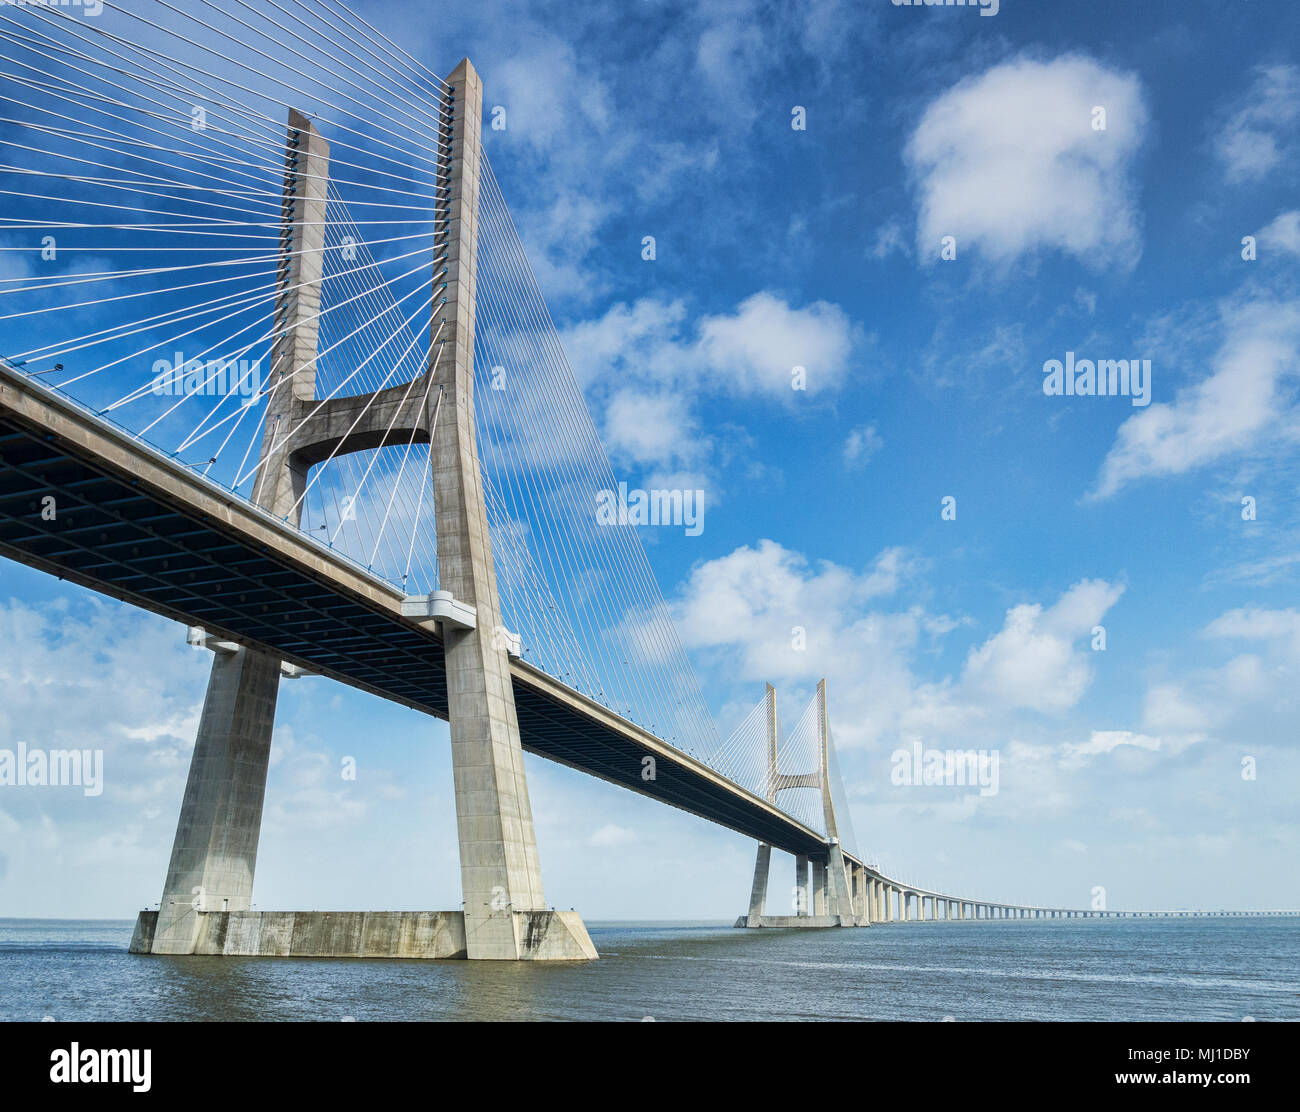 Vasco da Gama Brücke, die 17 km Kabel Brücke überspannt den Fluss Tejo in der Nähe von Lissabon, Portugal verbracht. Stockfoto